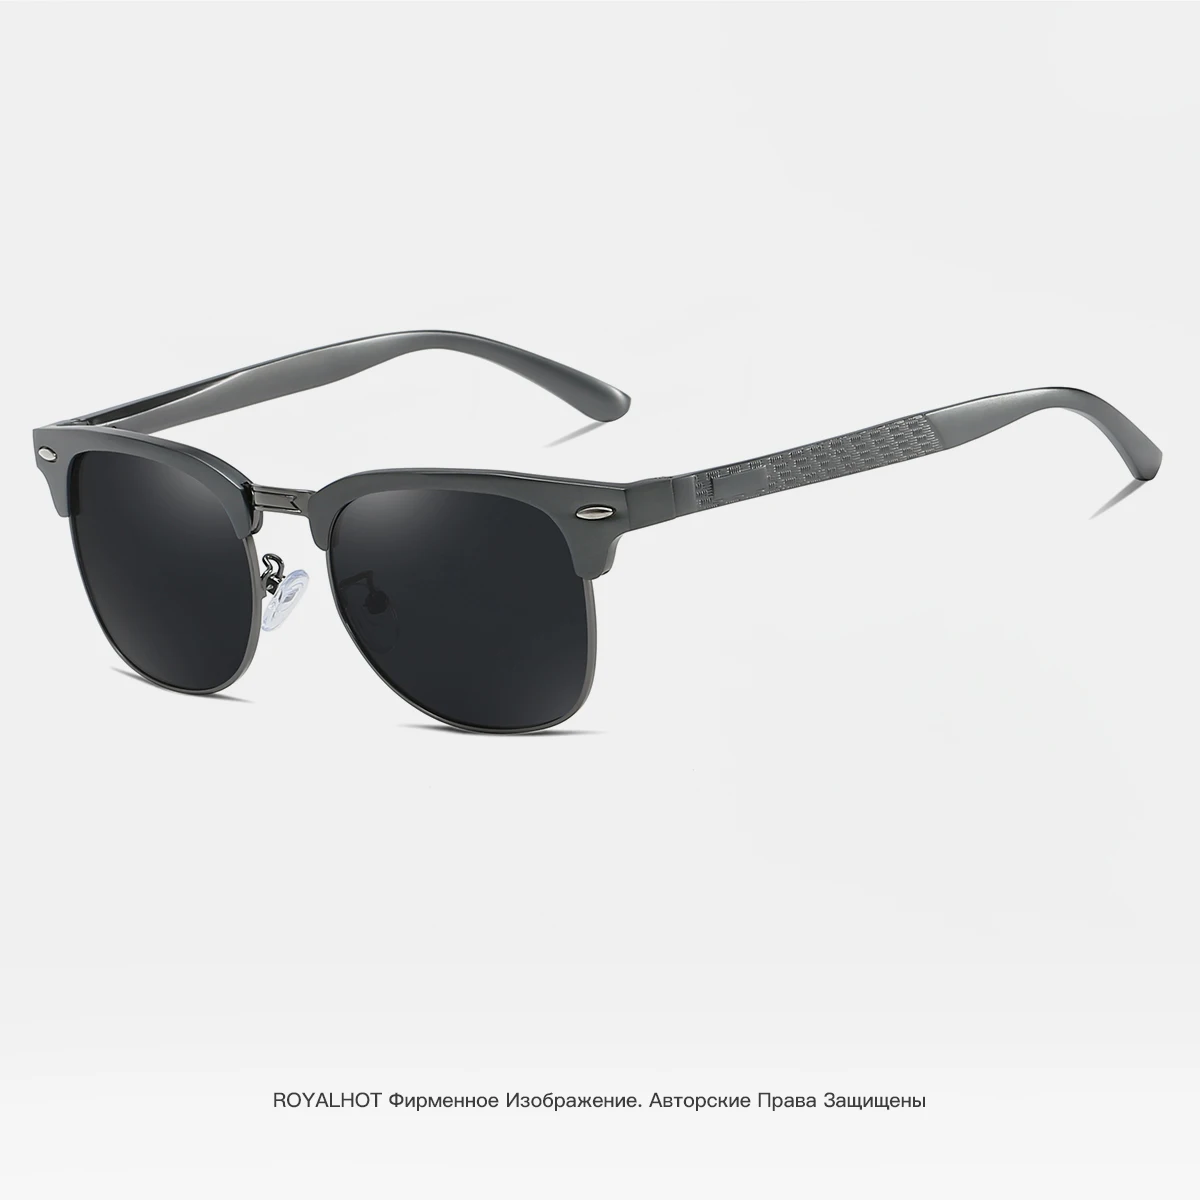 RoyalHot, мужские, женские, поляризационные солнцезащитные очки, алюминий, магний, полуоправа, очки для вождения, солнцезащитные очки, очки, мужские, 90089